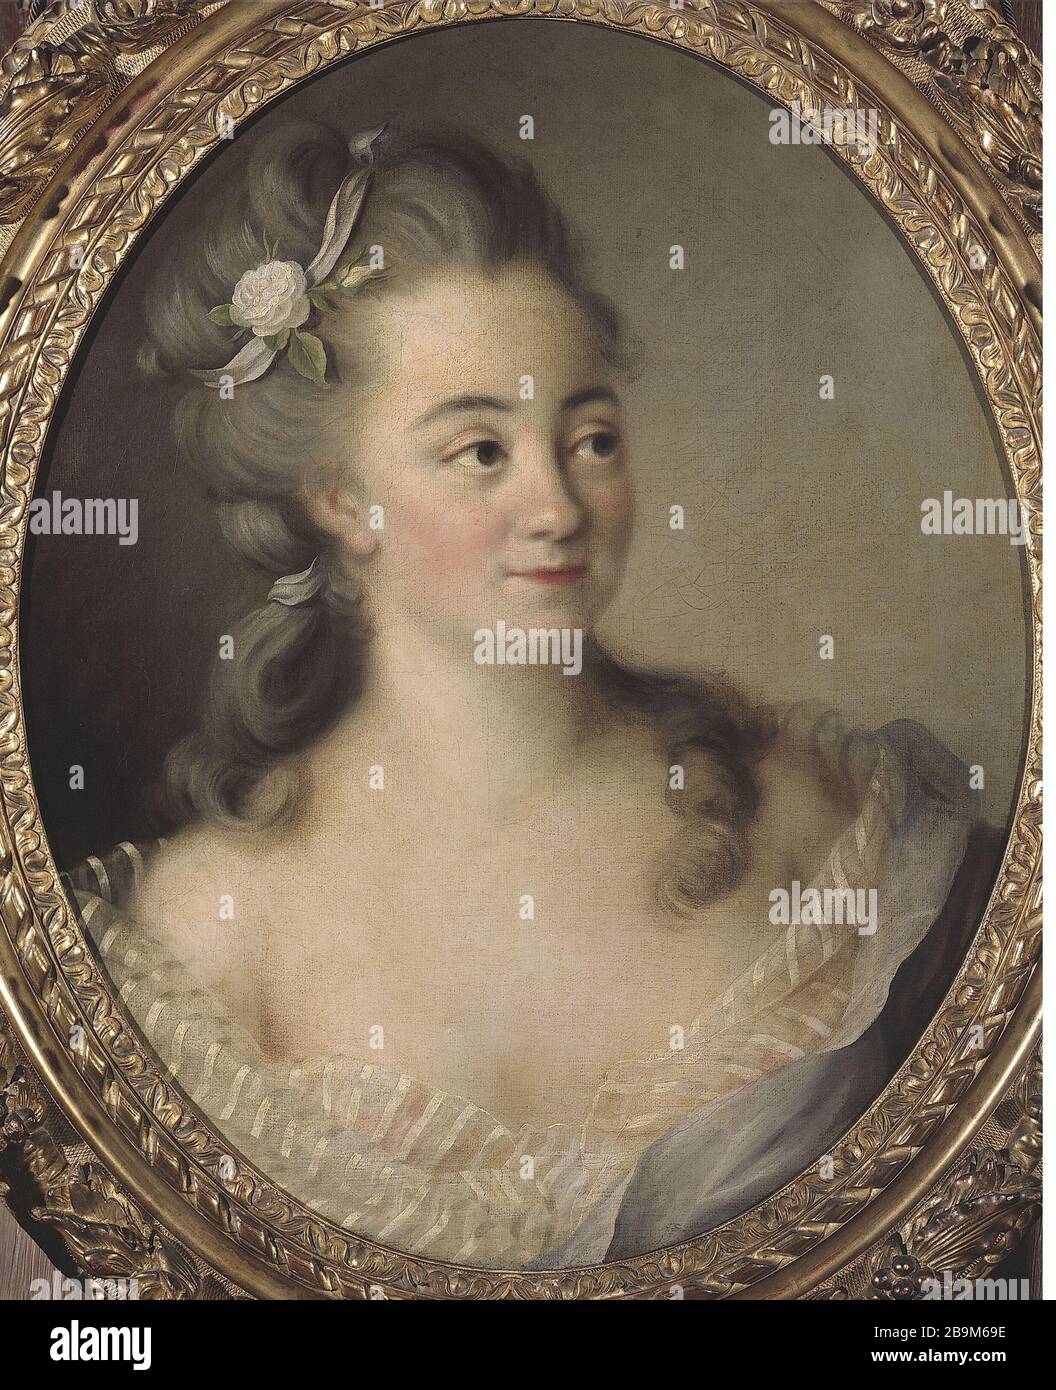 ALLEGED PORTRAIT OF MADAME Dugazon Portrait présumé de Madame Dugazon, actrice de la Comédie italienne. Huile sur toile. Paris, musée Cognacq-Jay. Stock Photo